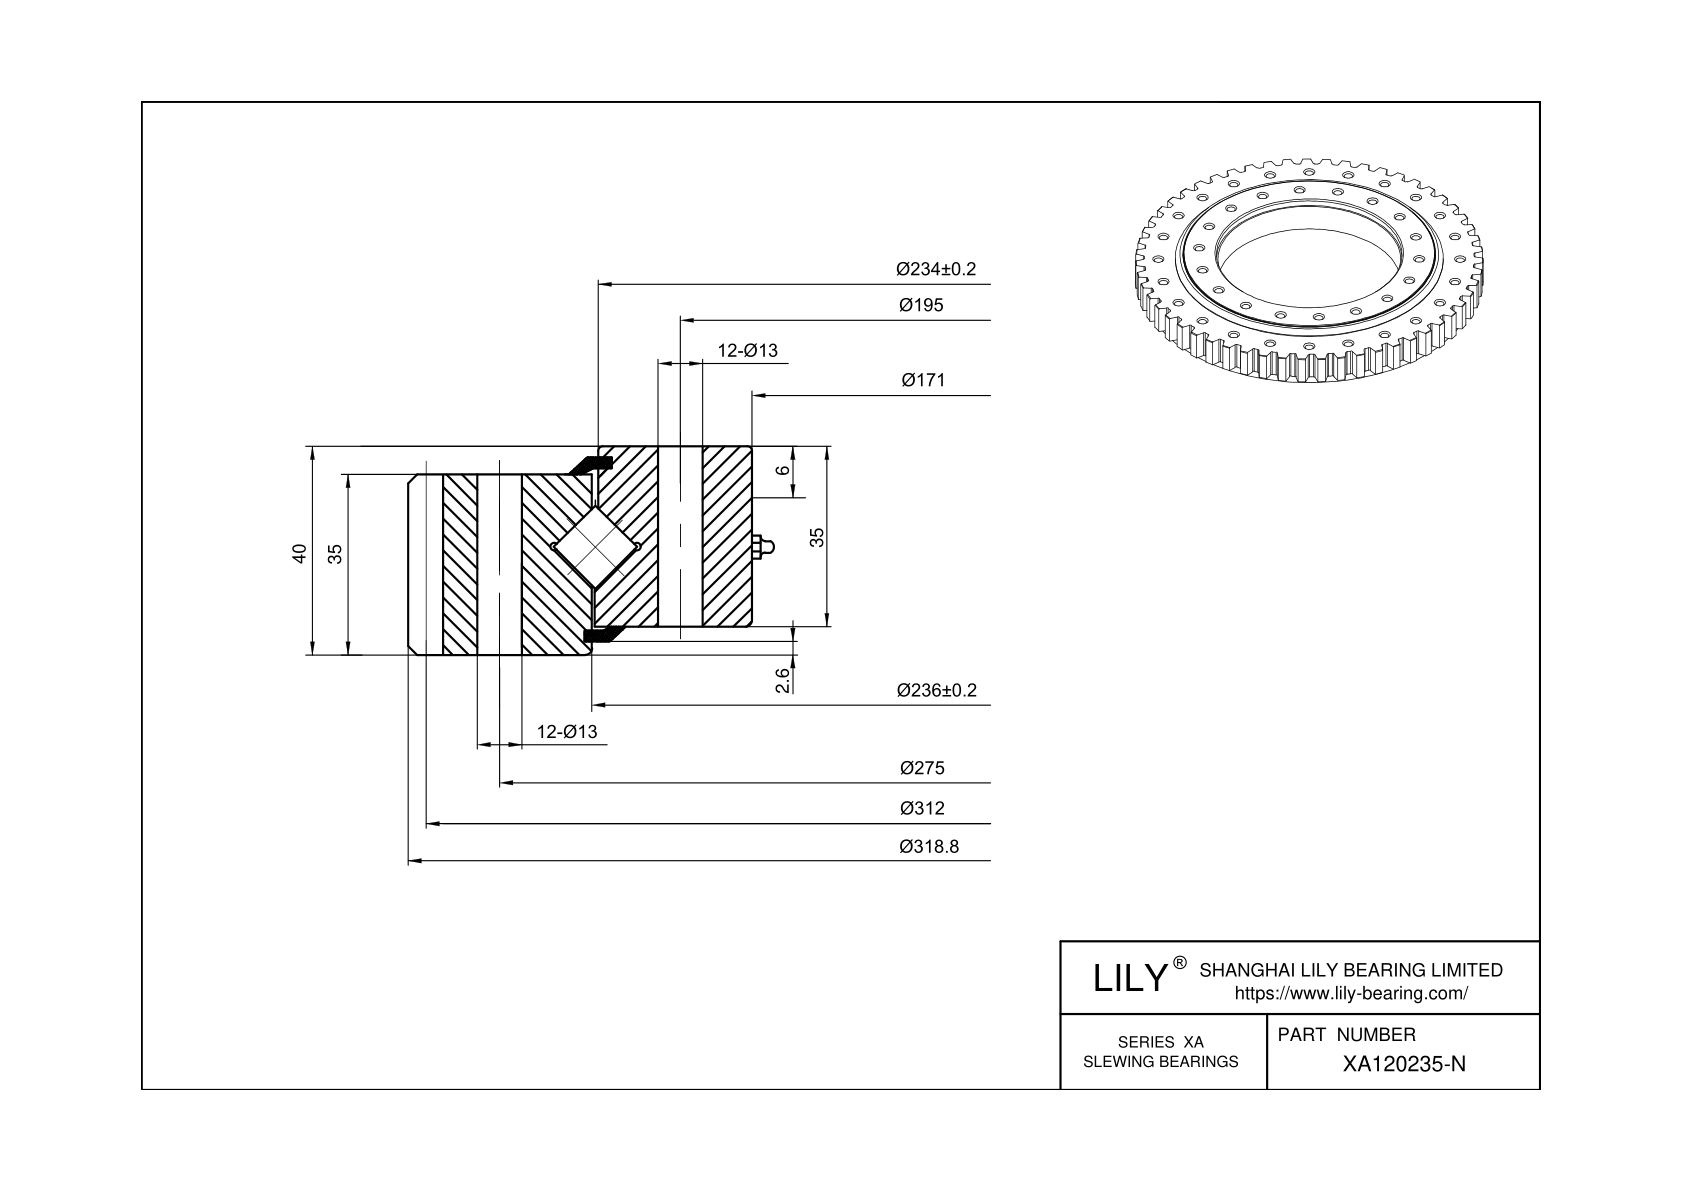 XA120235-N Cross Roller Slewing Ring Bearing cad drawing